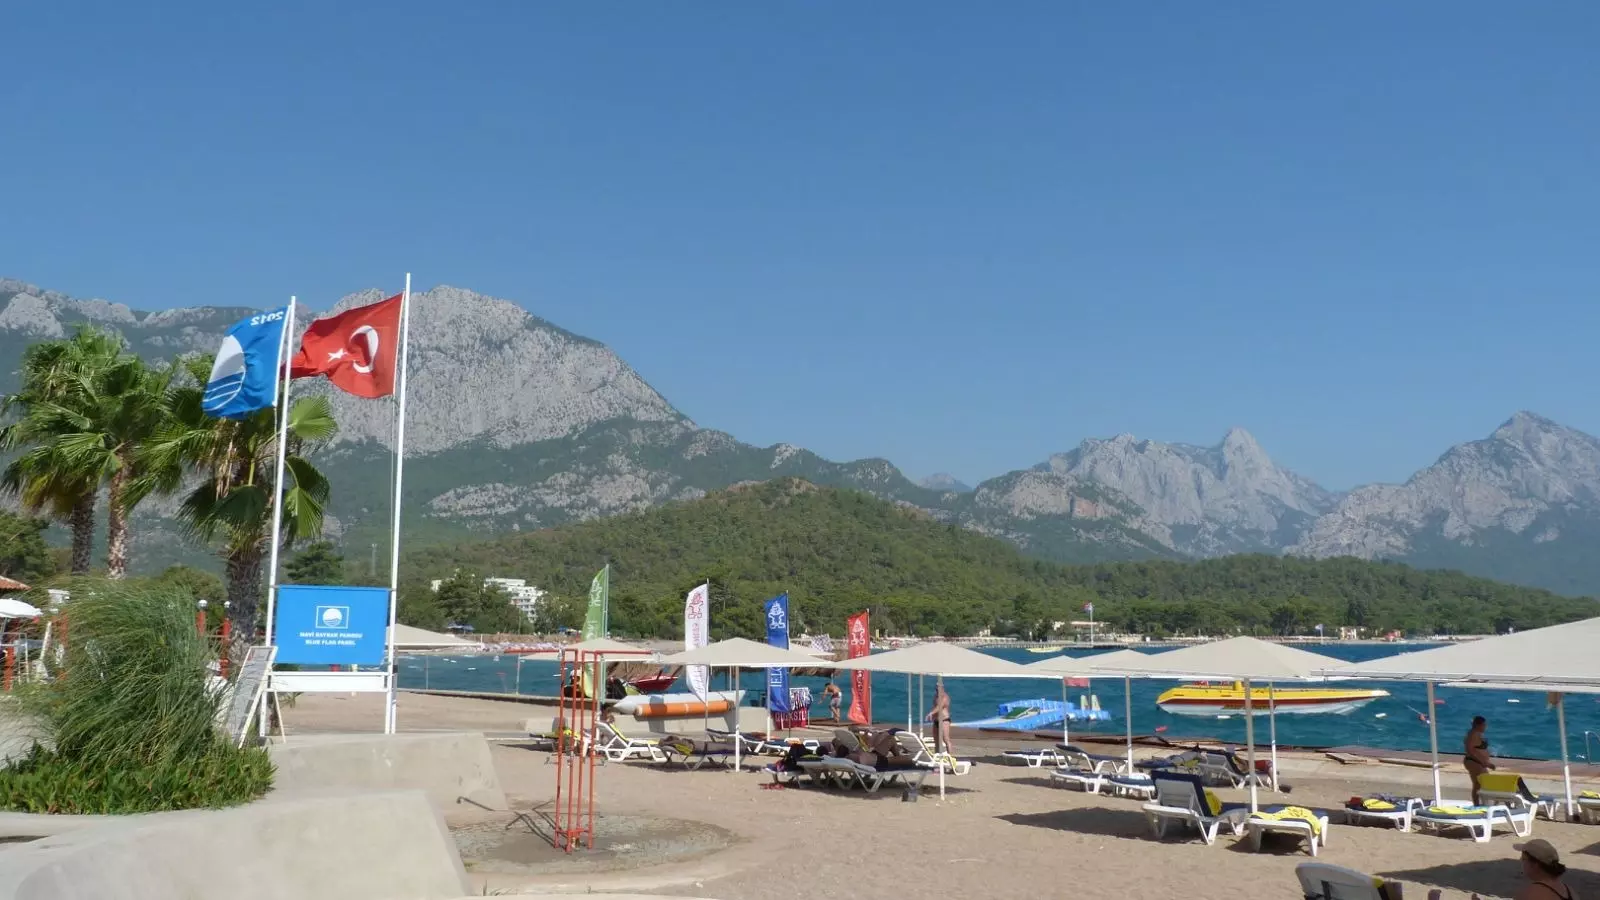 Проживание в номере 3-5-звездочного отеля в Турции подешевело на 9%